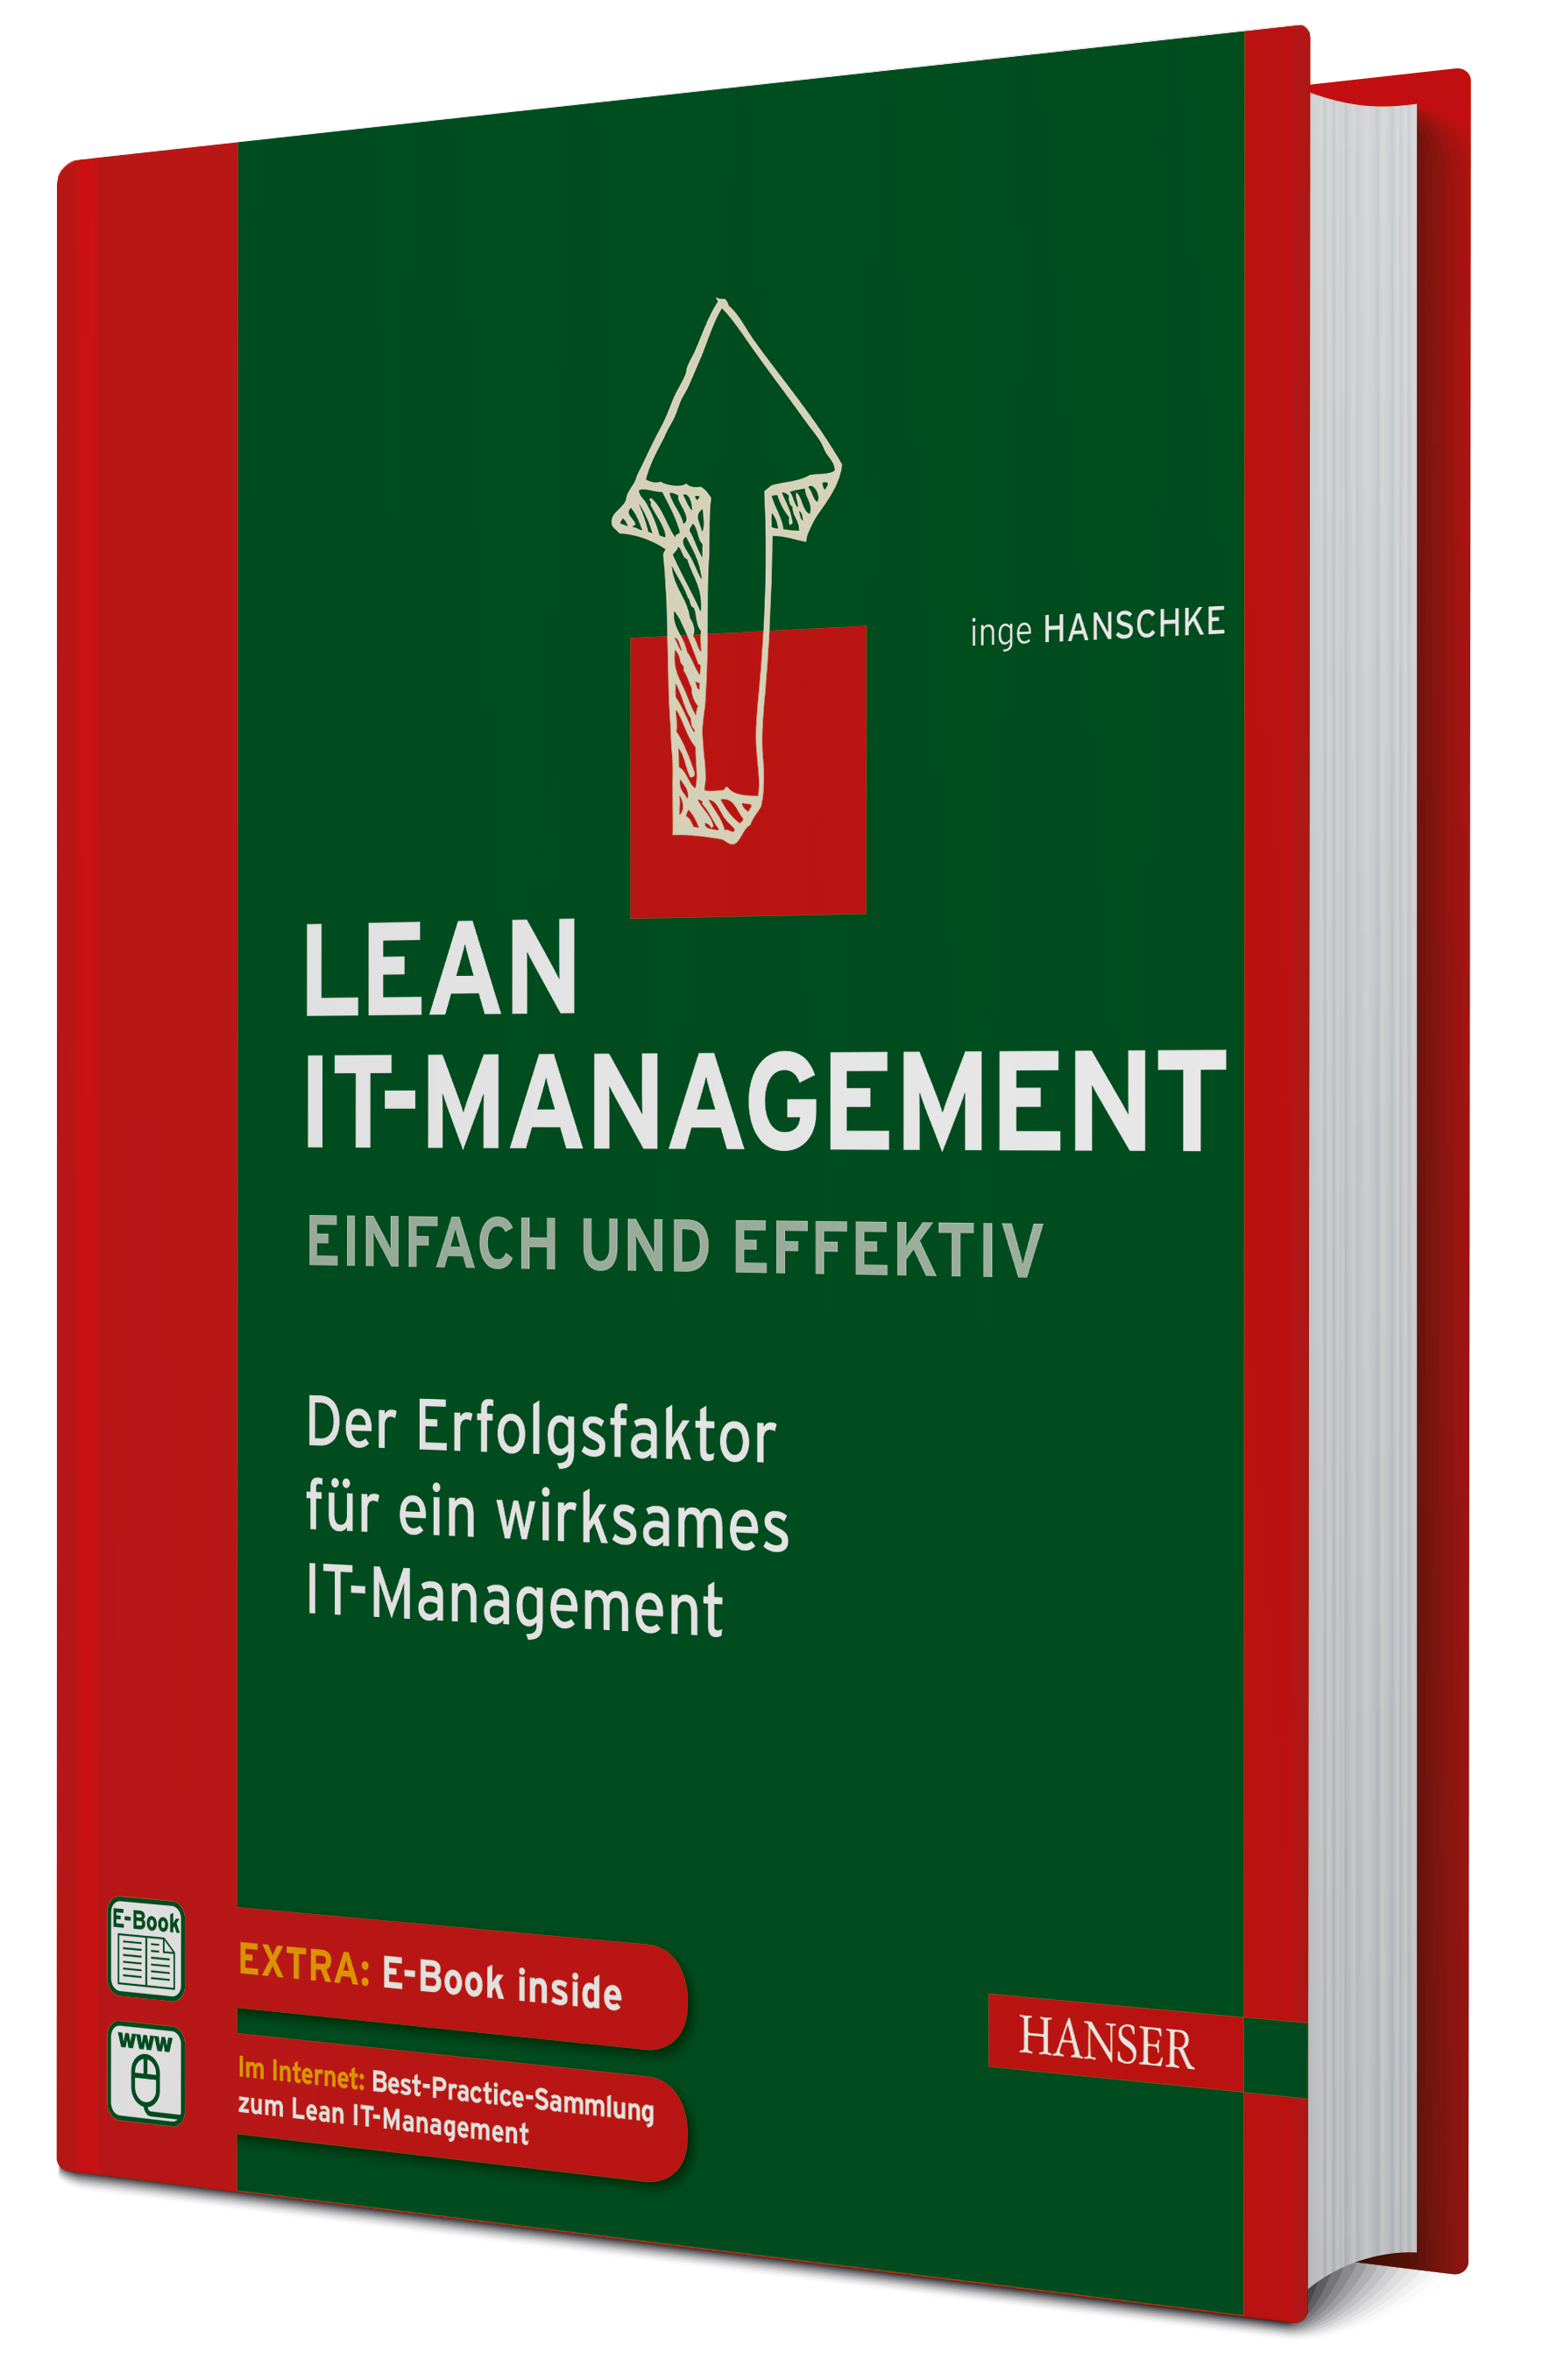 Inge Hanschke "Lean IT-Management – einfach und effektiv" 10/2014 496 Seiten, fester Einband © 2014 Carl Hanser Verlag GmbH & Co. KG